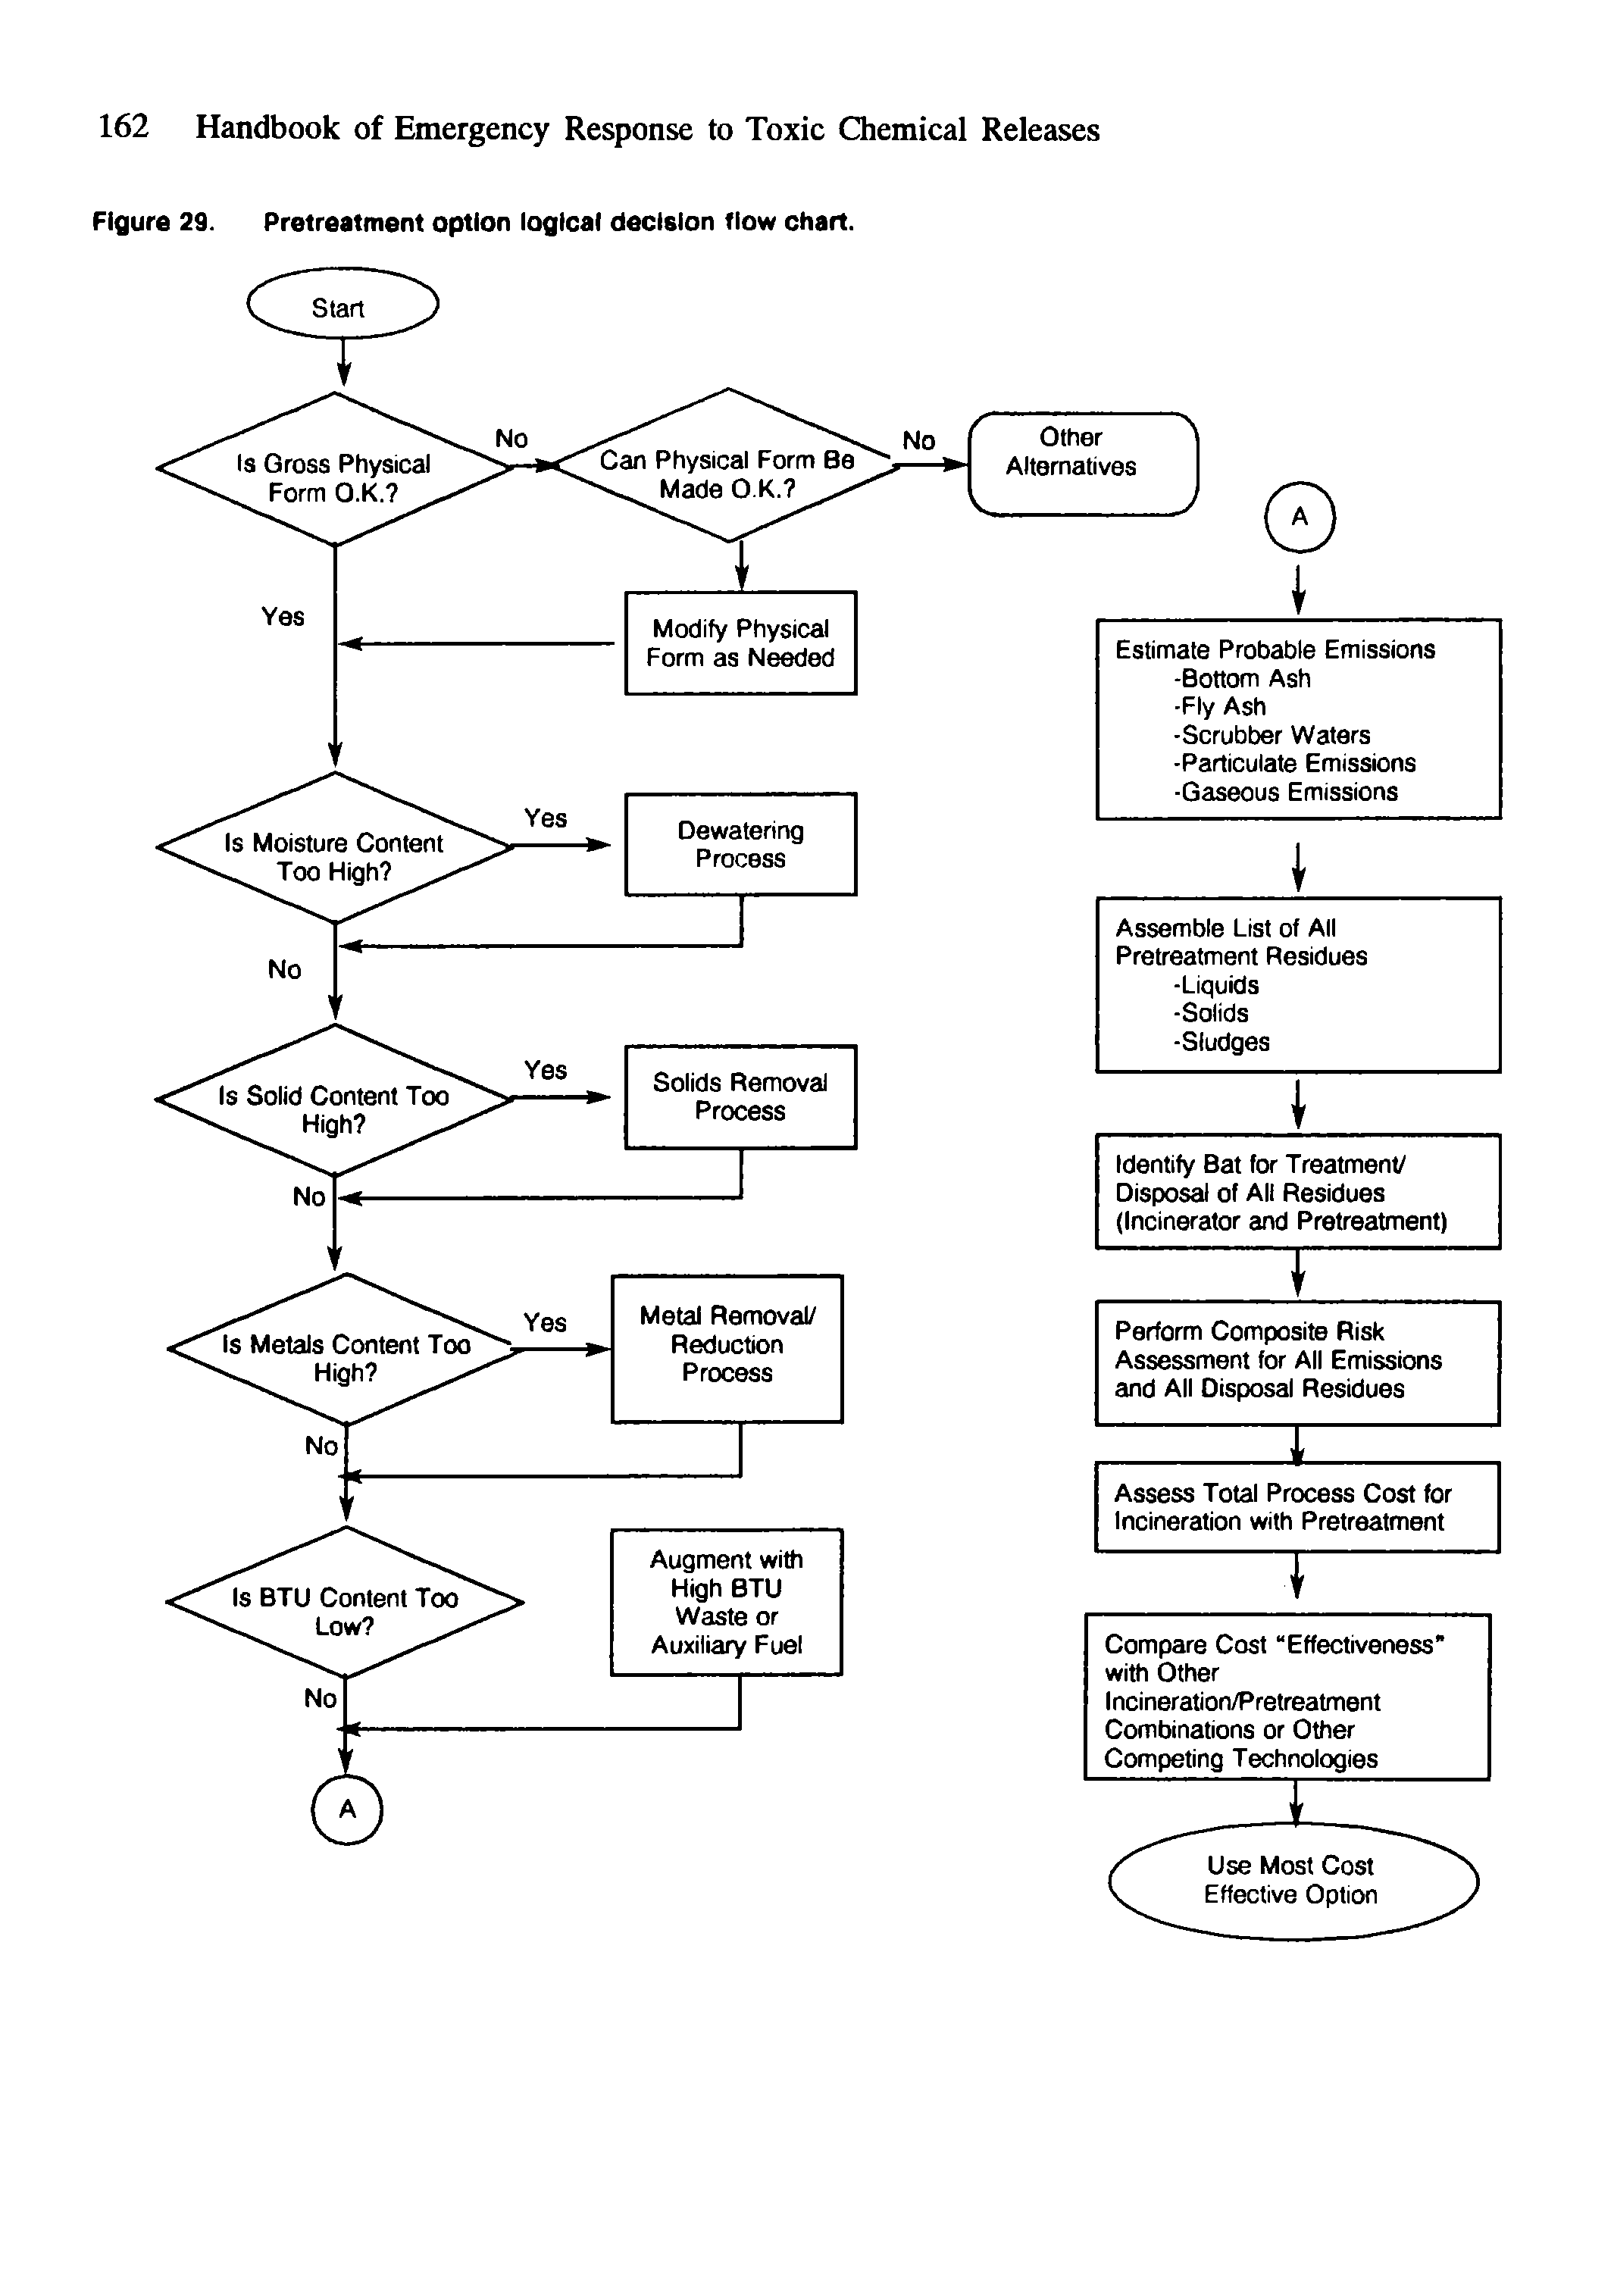 Figure 29. Pretreatment option logical decision flow chart.